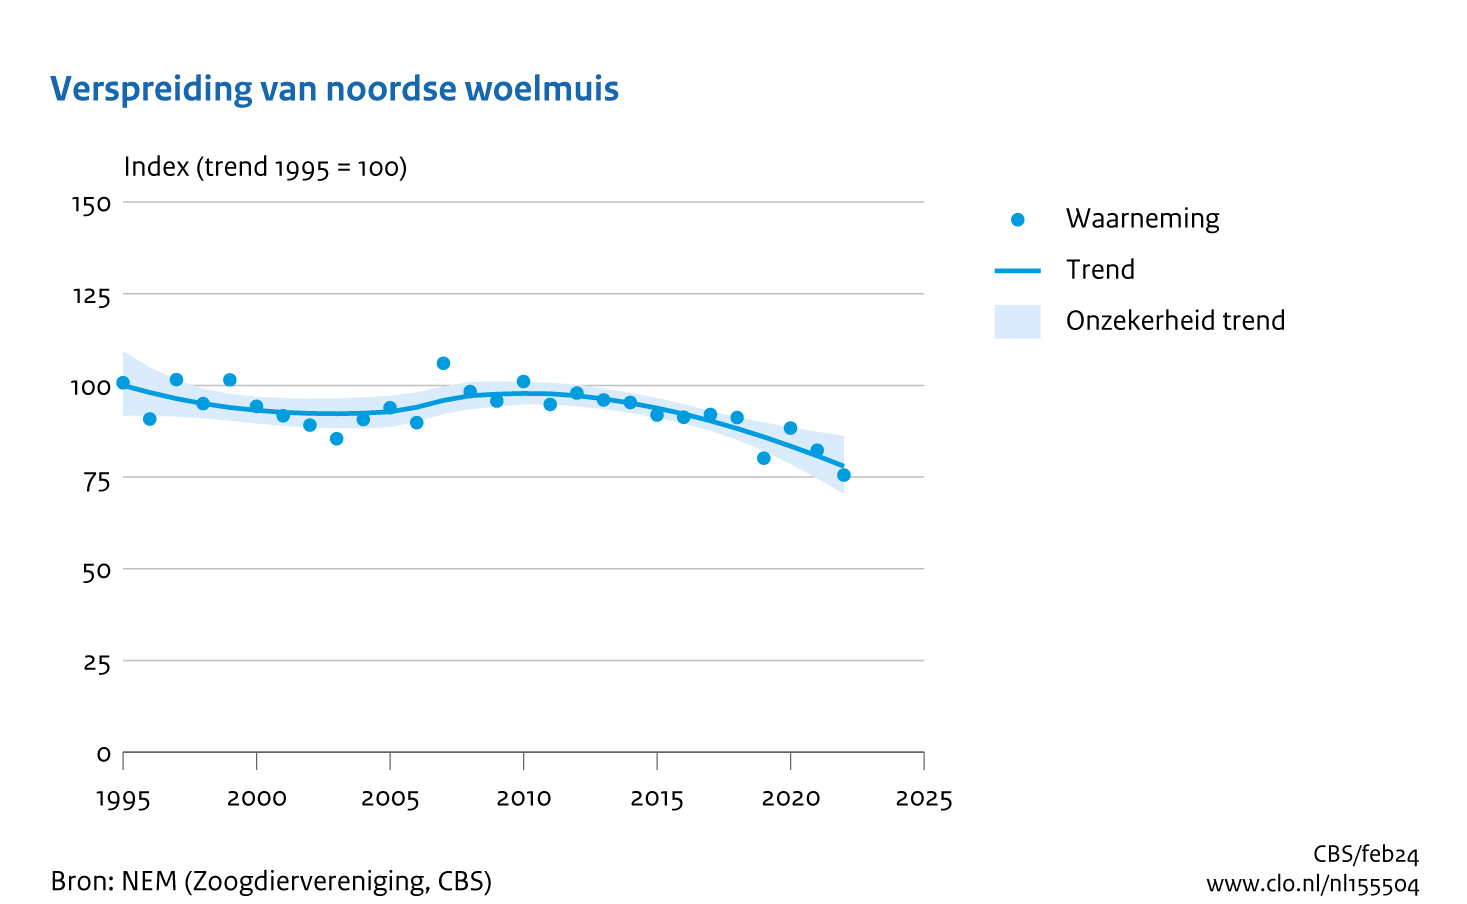 De grafiek Verspreiding van Noordse woelmuis laat zien dat de verspreidingstrend van de Noordse woelmuis golvend afneemt. 
Vanaf 1995 (het startjaar van de tellingen met index = 100) daalt de trend van 92 in 2003, waarna de trend stijgt tot 98 in 2010. Daarna daalt de trend tot 78 in het laatste teljaar, 2022.